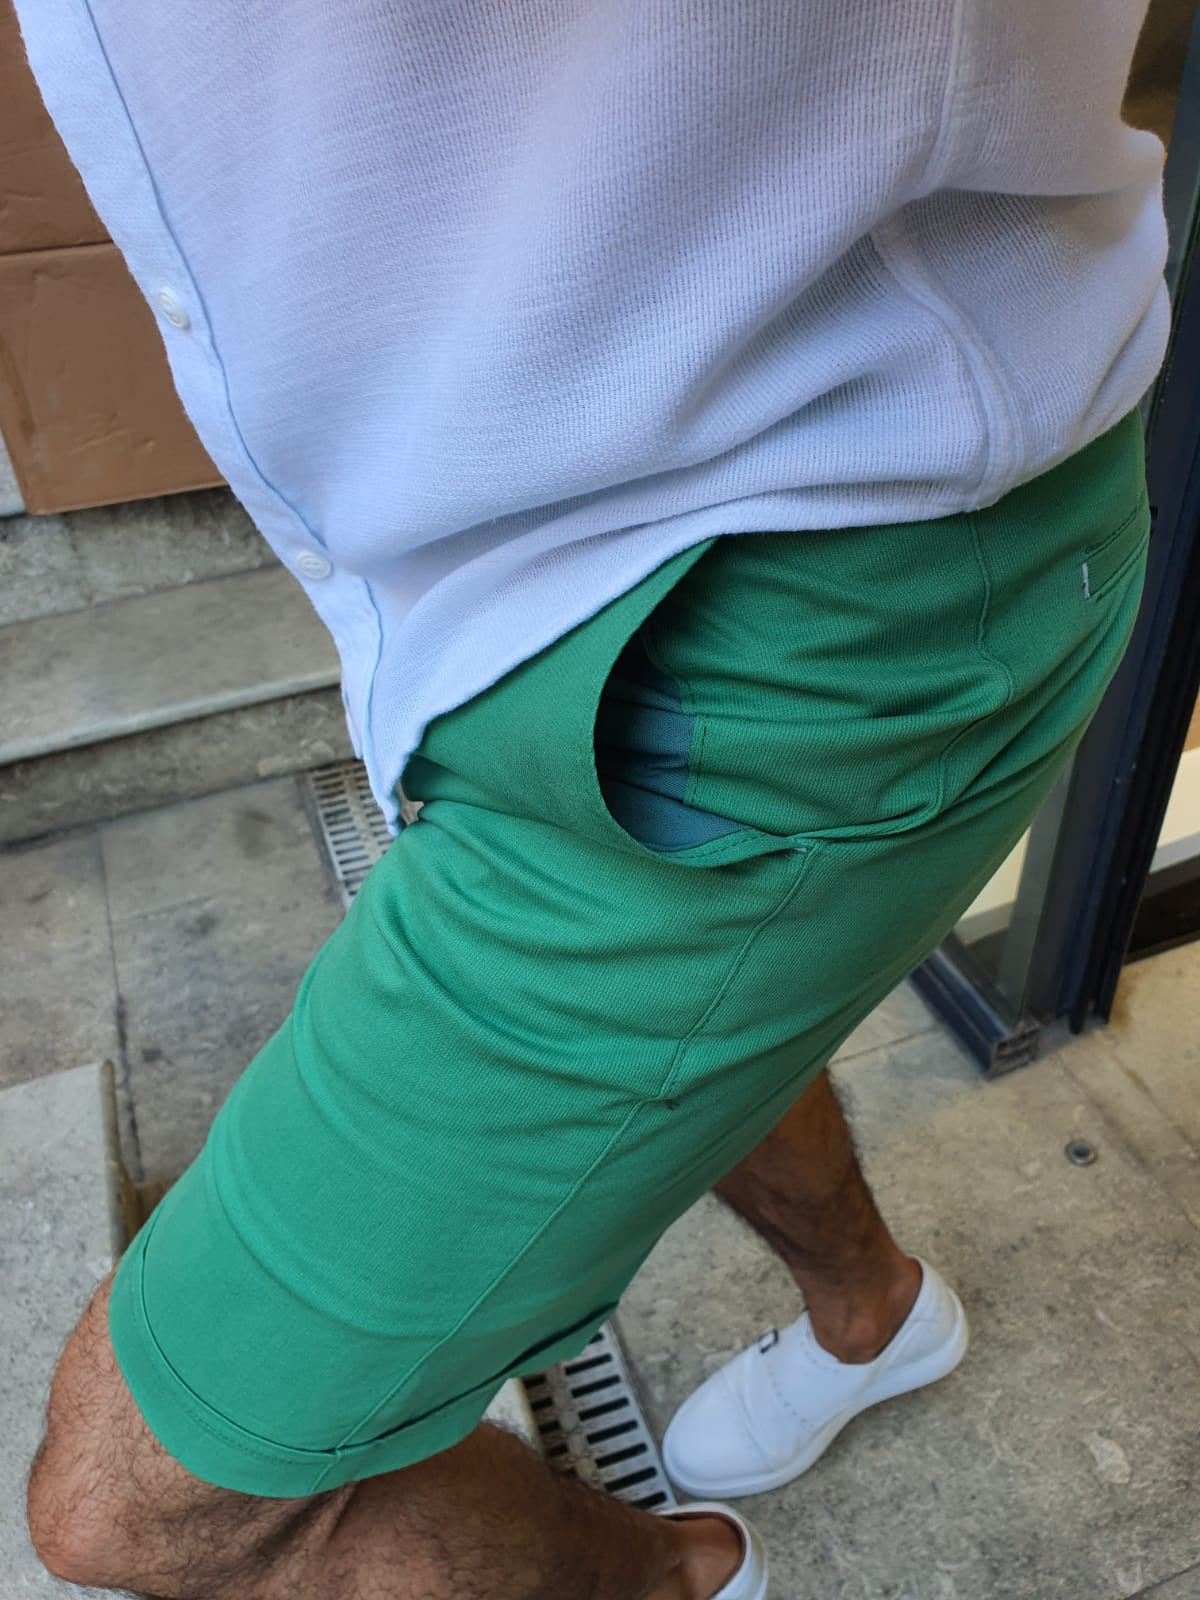 Bern Green Slim Fit Shorts